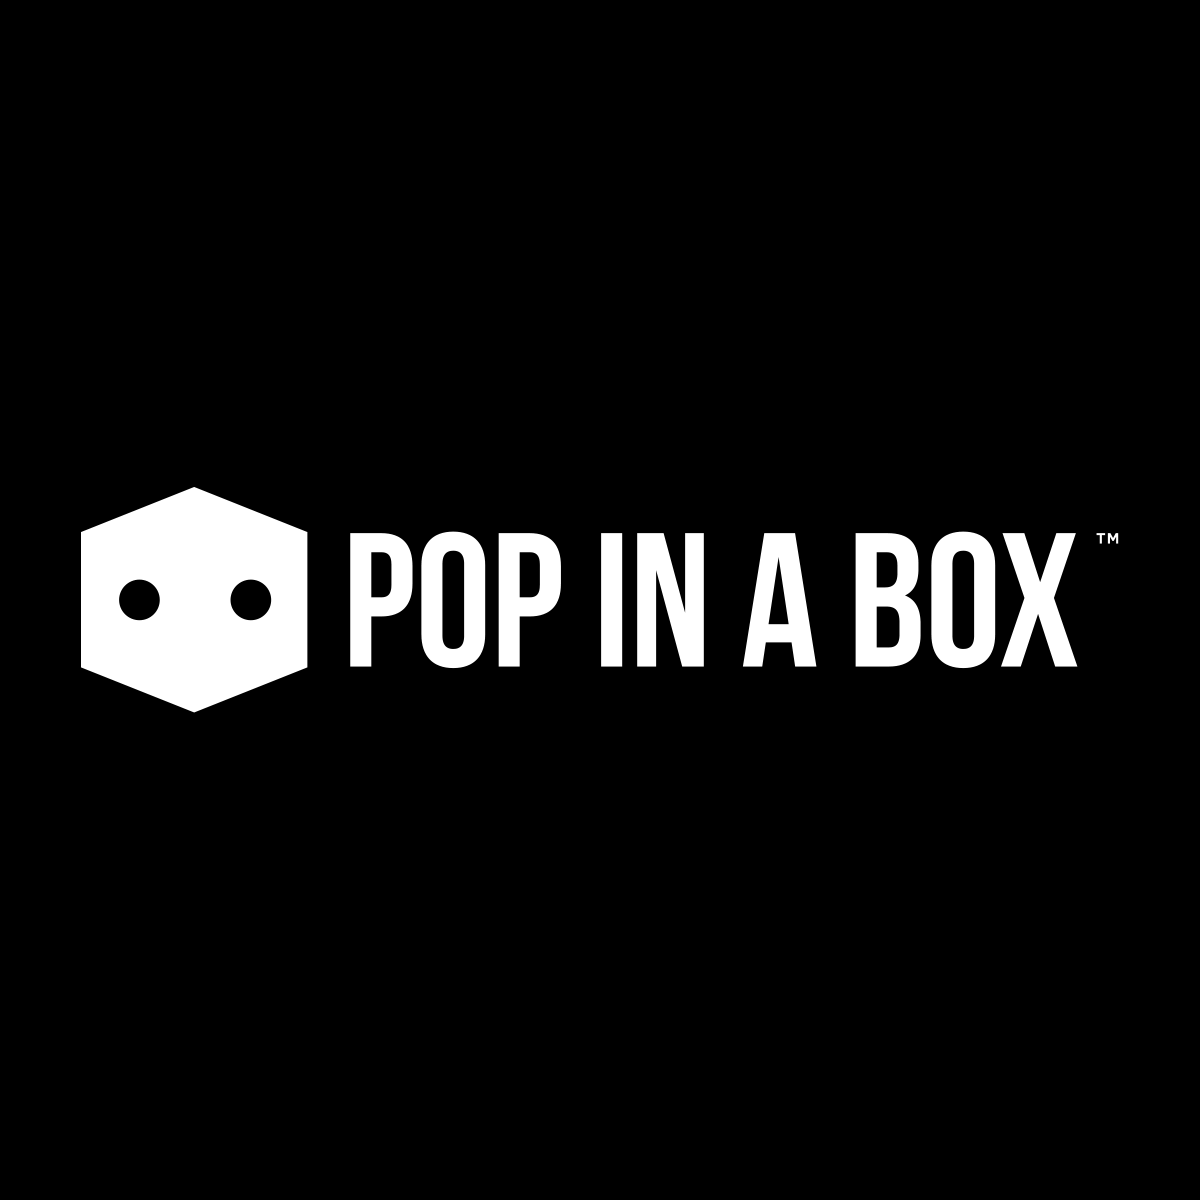 Pop In A Box UK